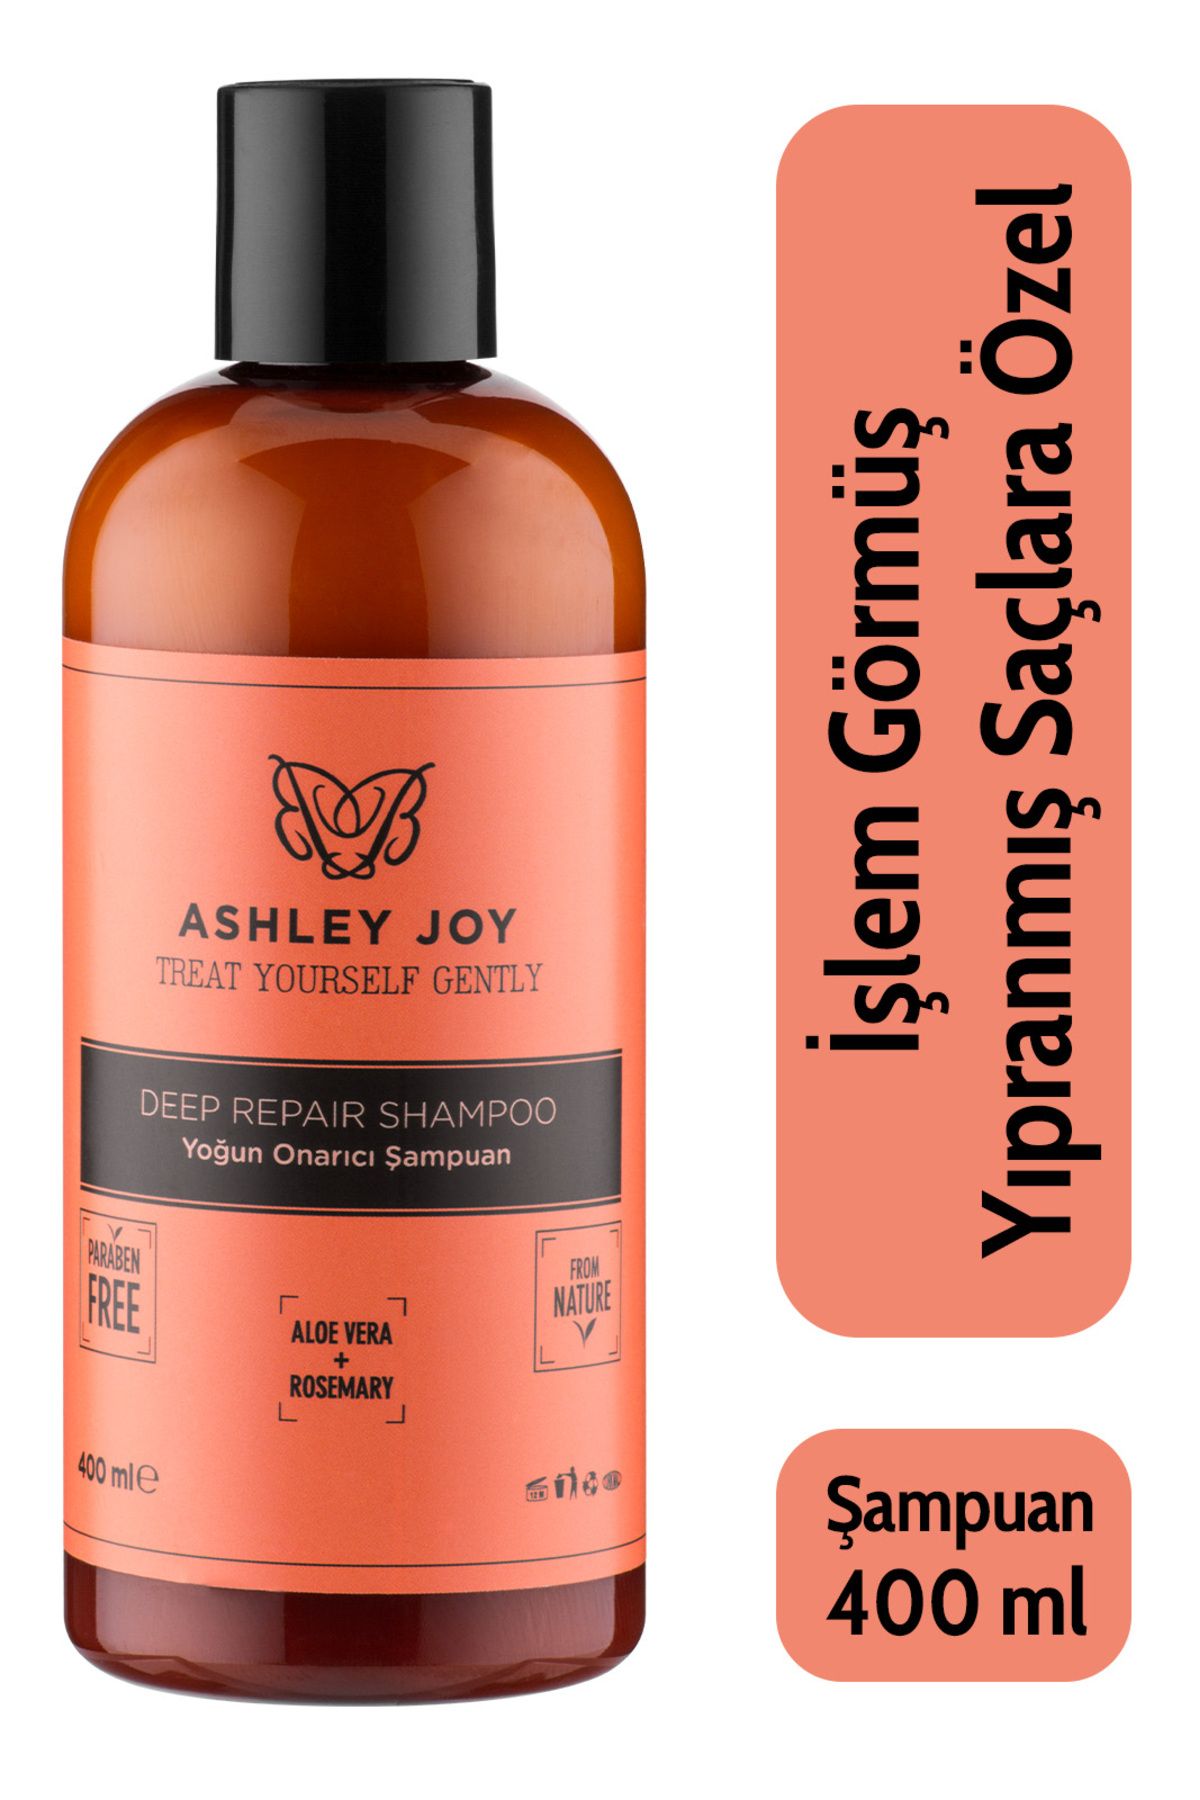 Ashley Joy Işlem Görmüş Yıpranmış Saçlara Özel Keratin Içeren Yoğun Onarıcı Şampuan 400 ml